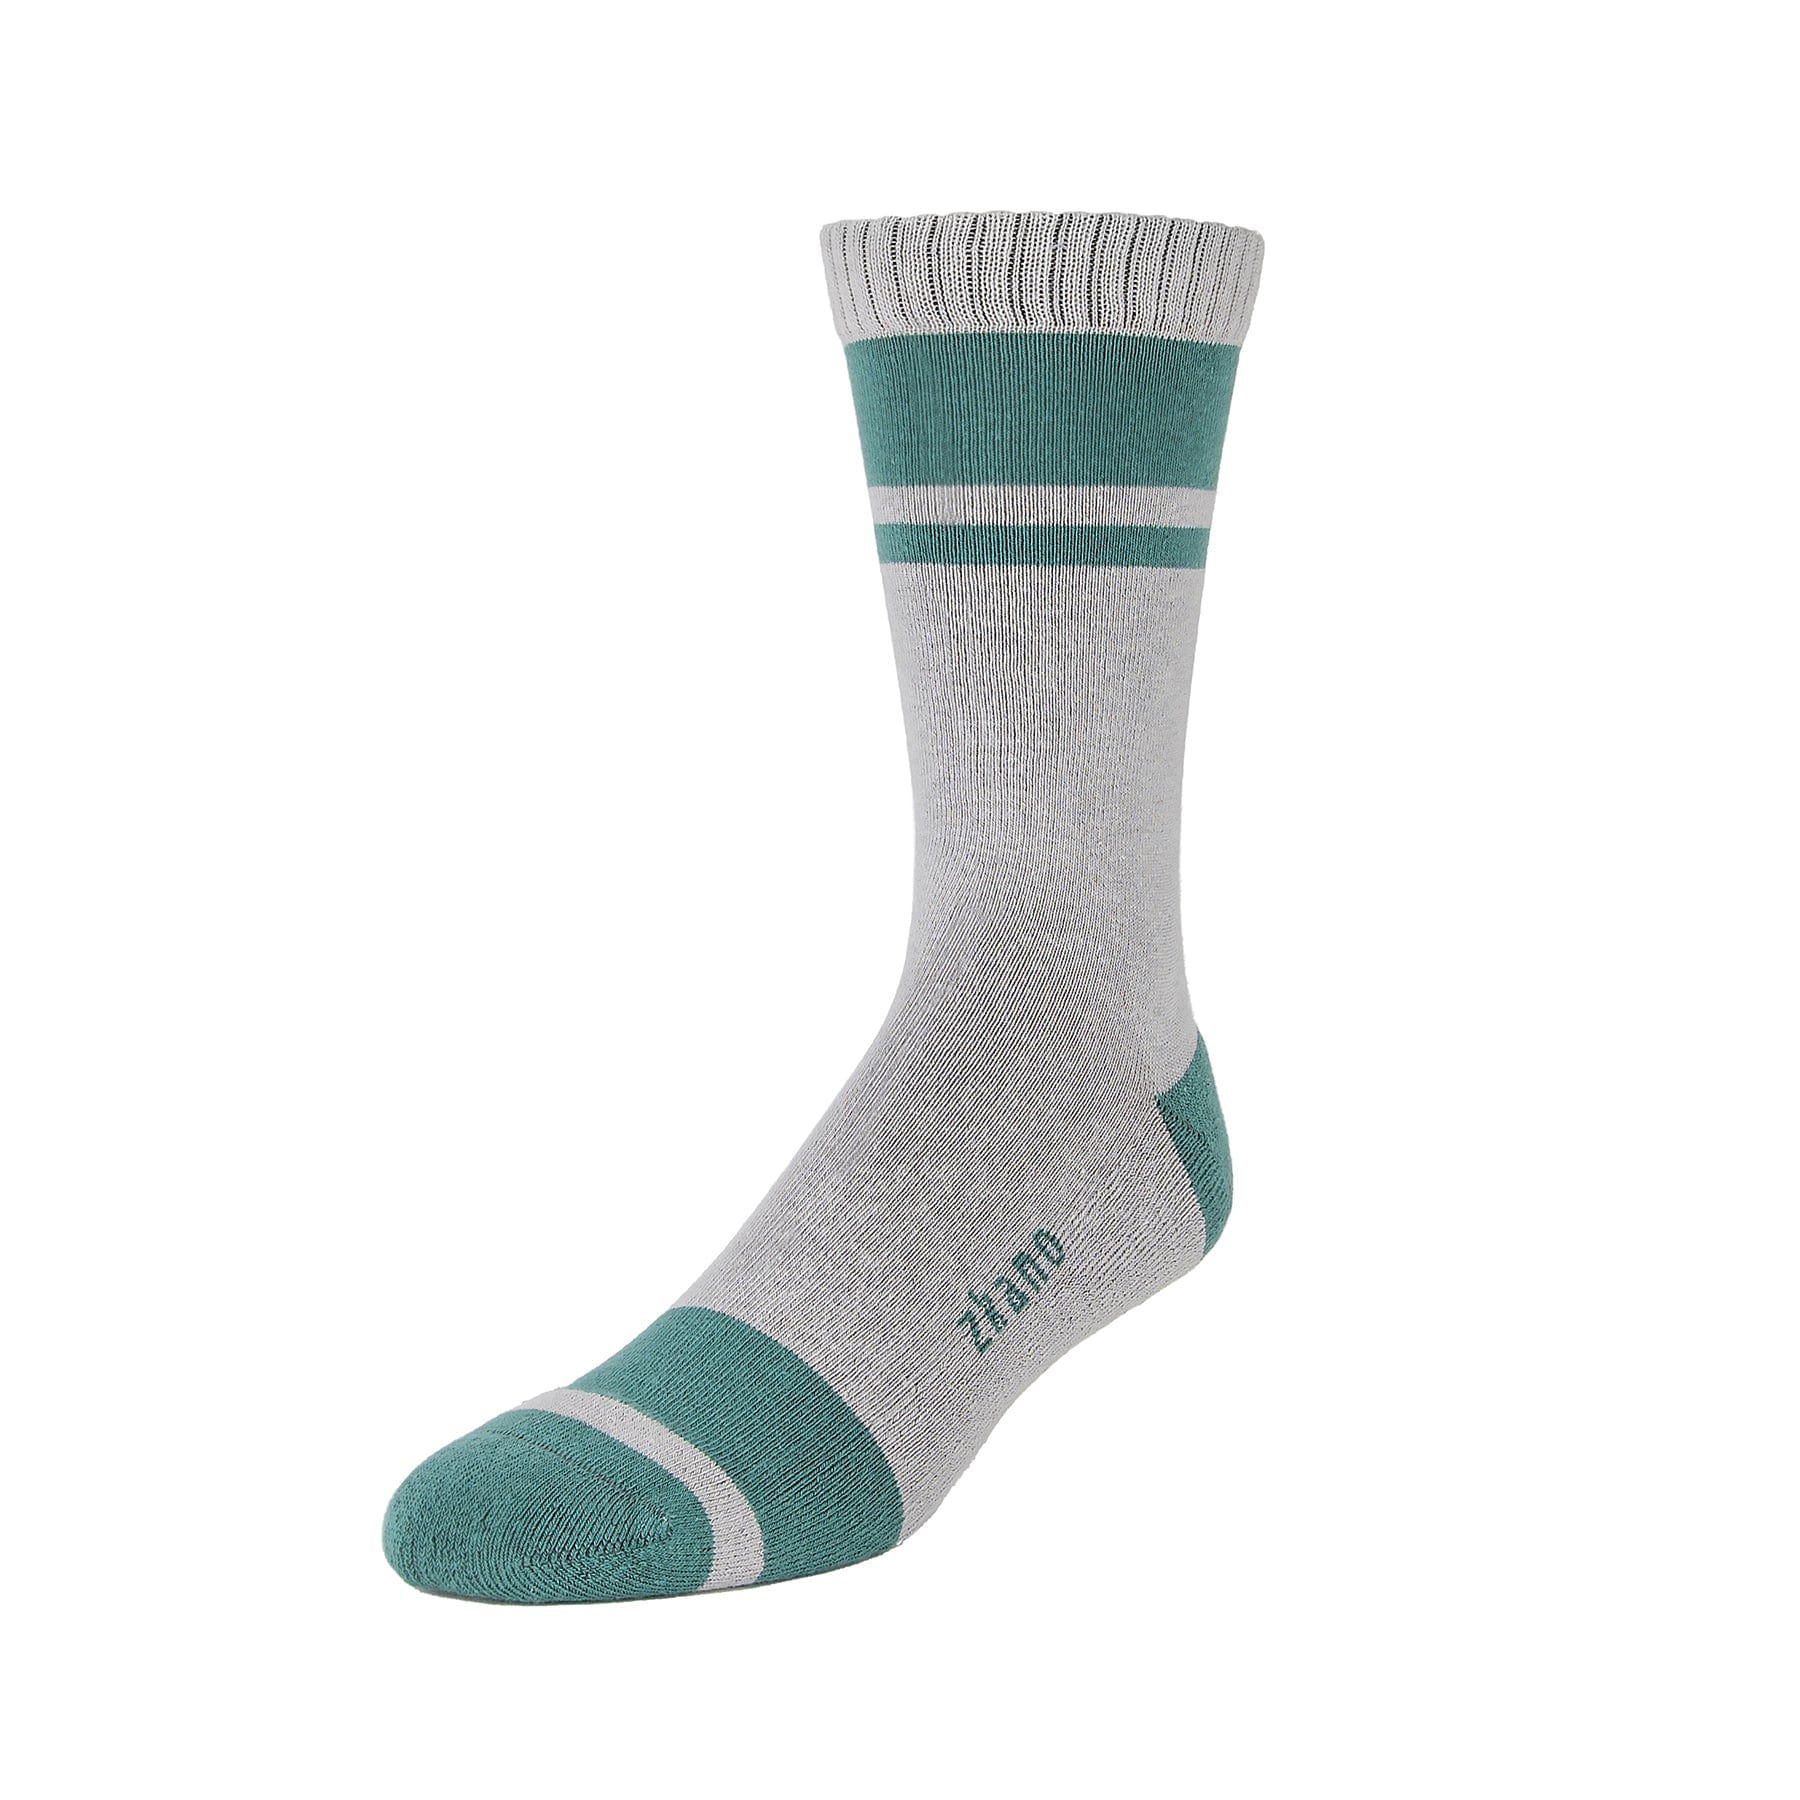 – Organic Socks Crew Little River socks Cushion Cotton - Fir - zkano